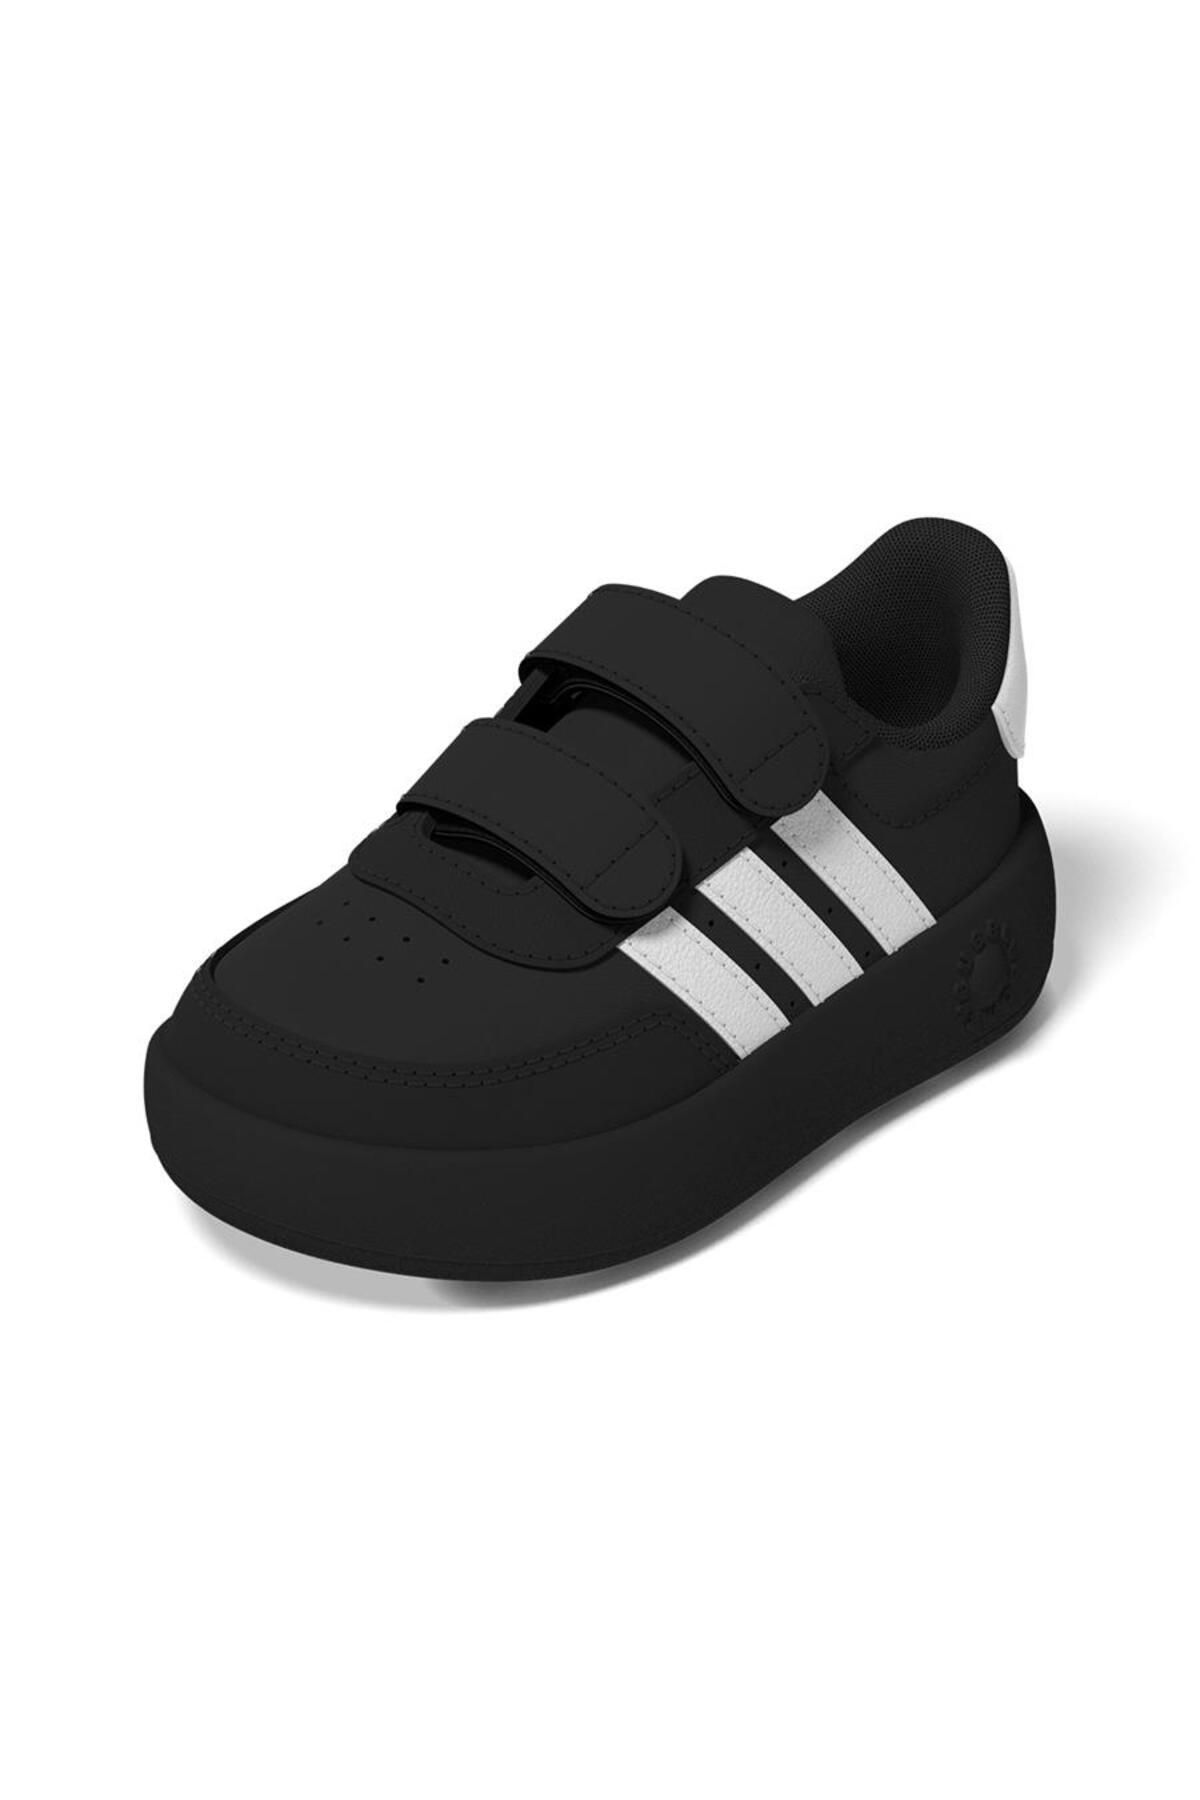 adidas Breaknet 2.0 Cf Çocuk Günlük Spor Ayakkabı Id5277